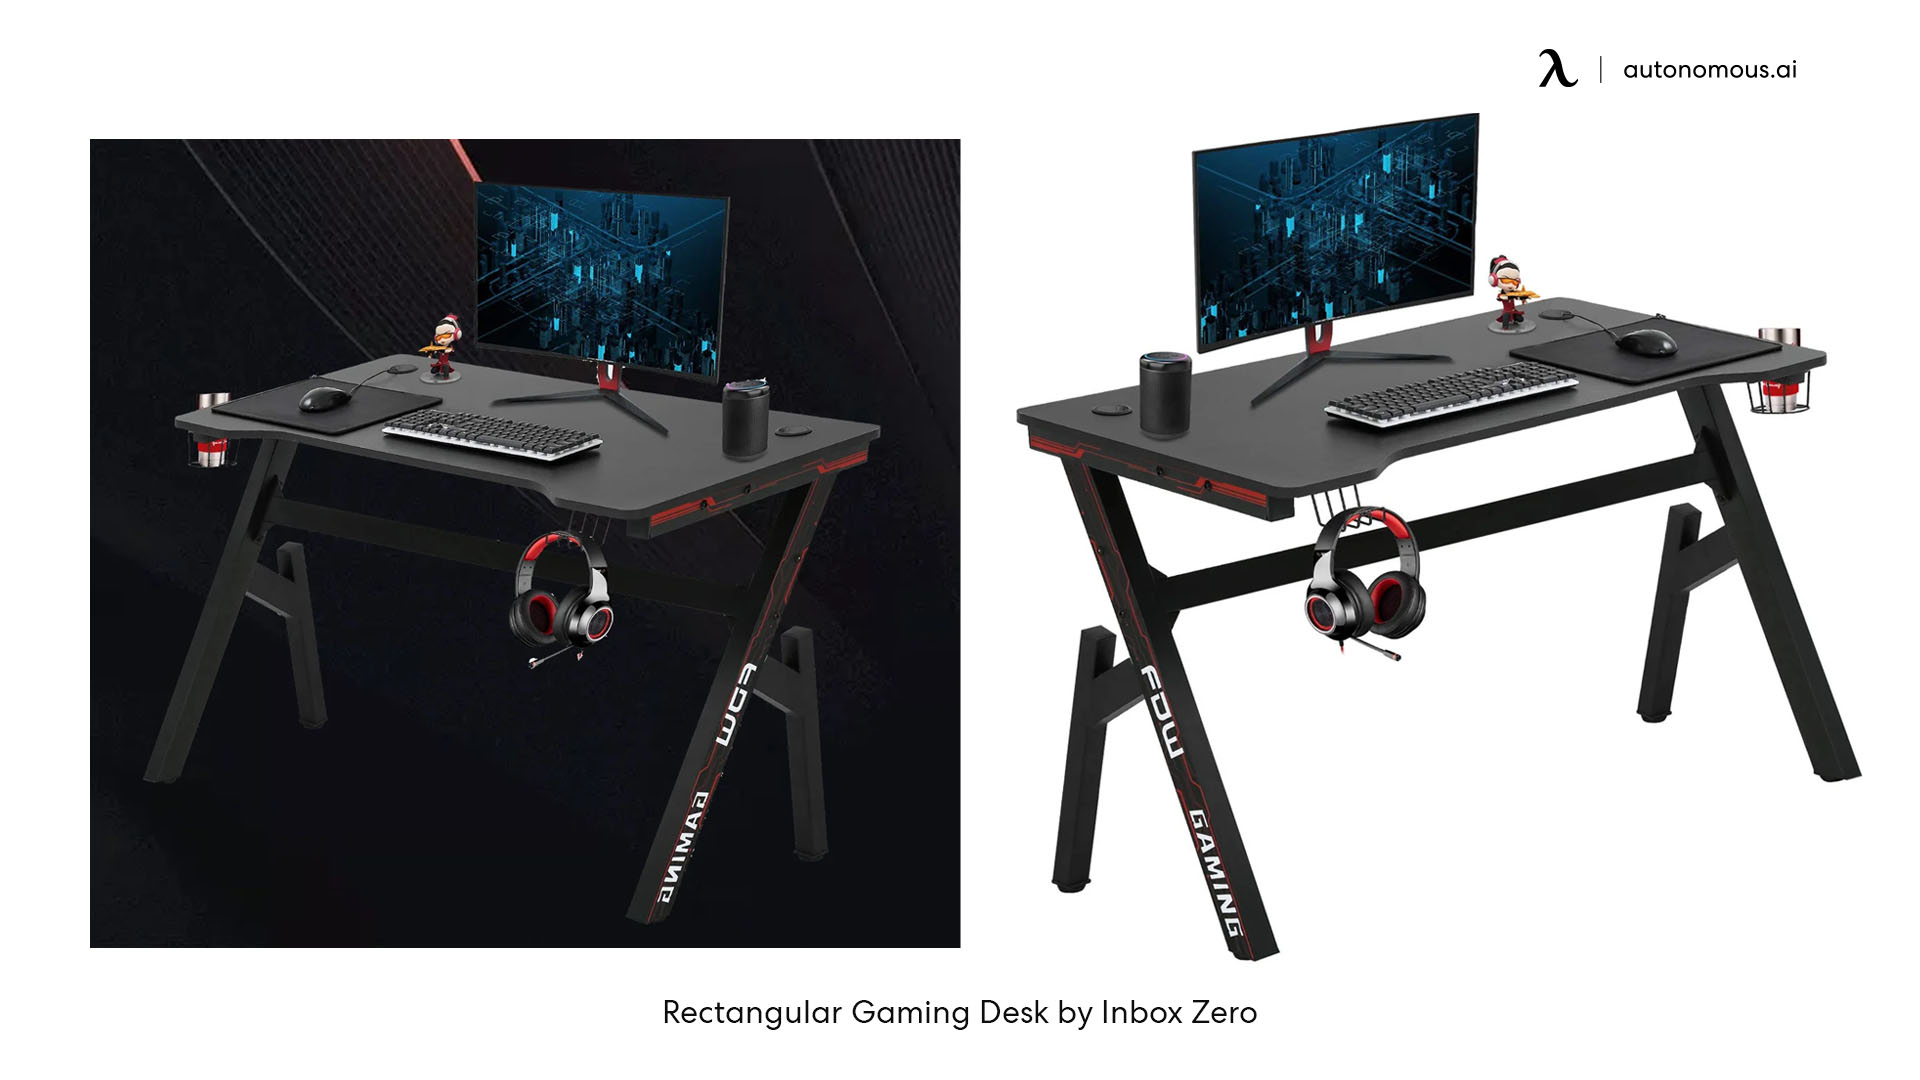 Rectangular Gaming desk dimensions